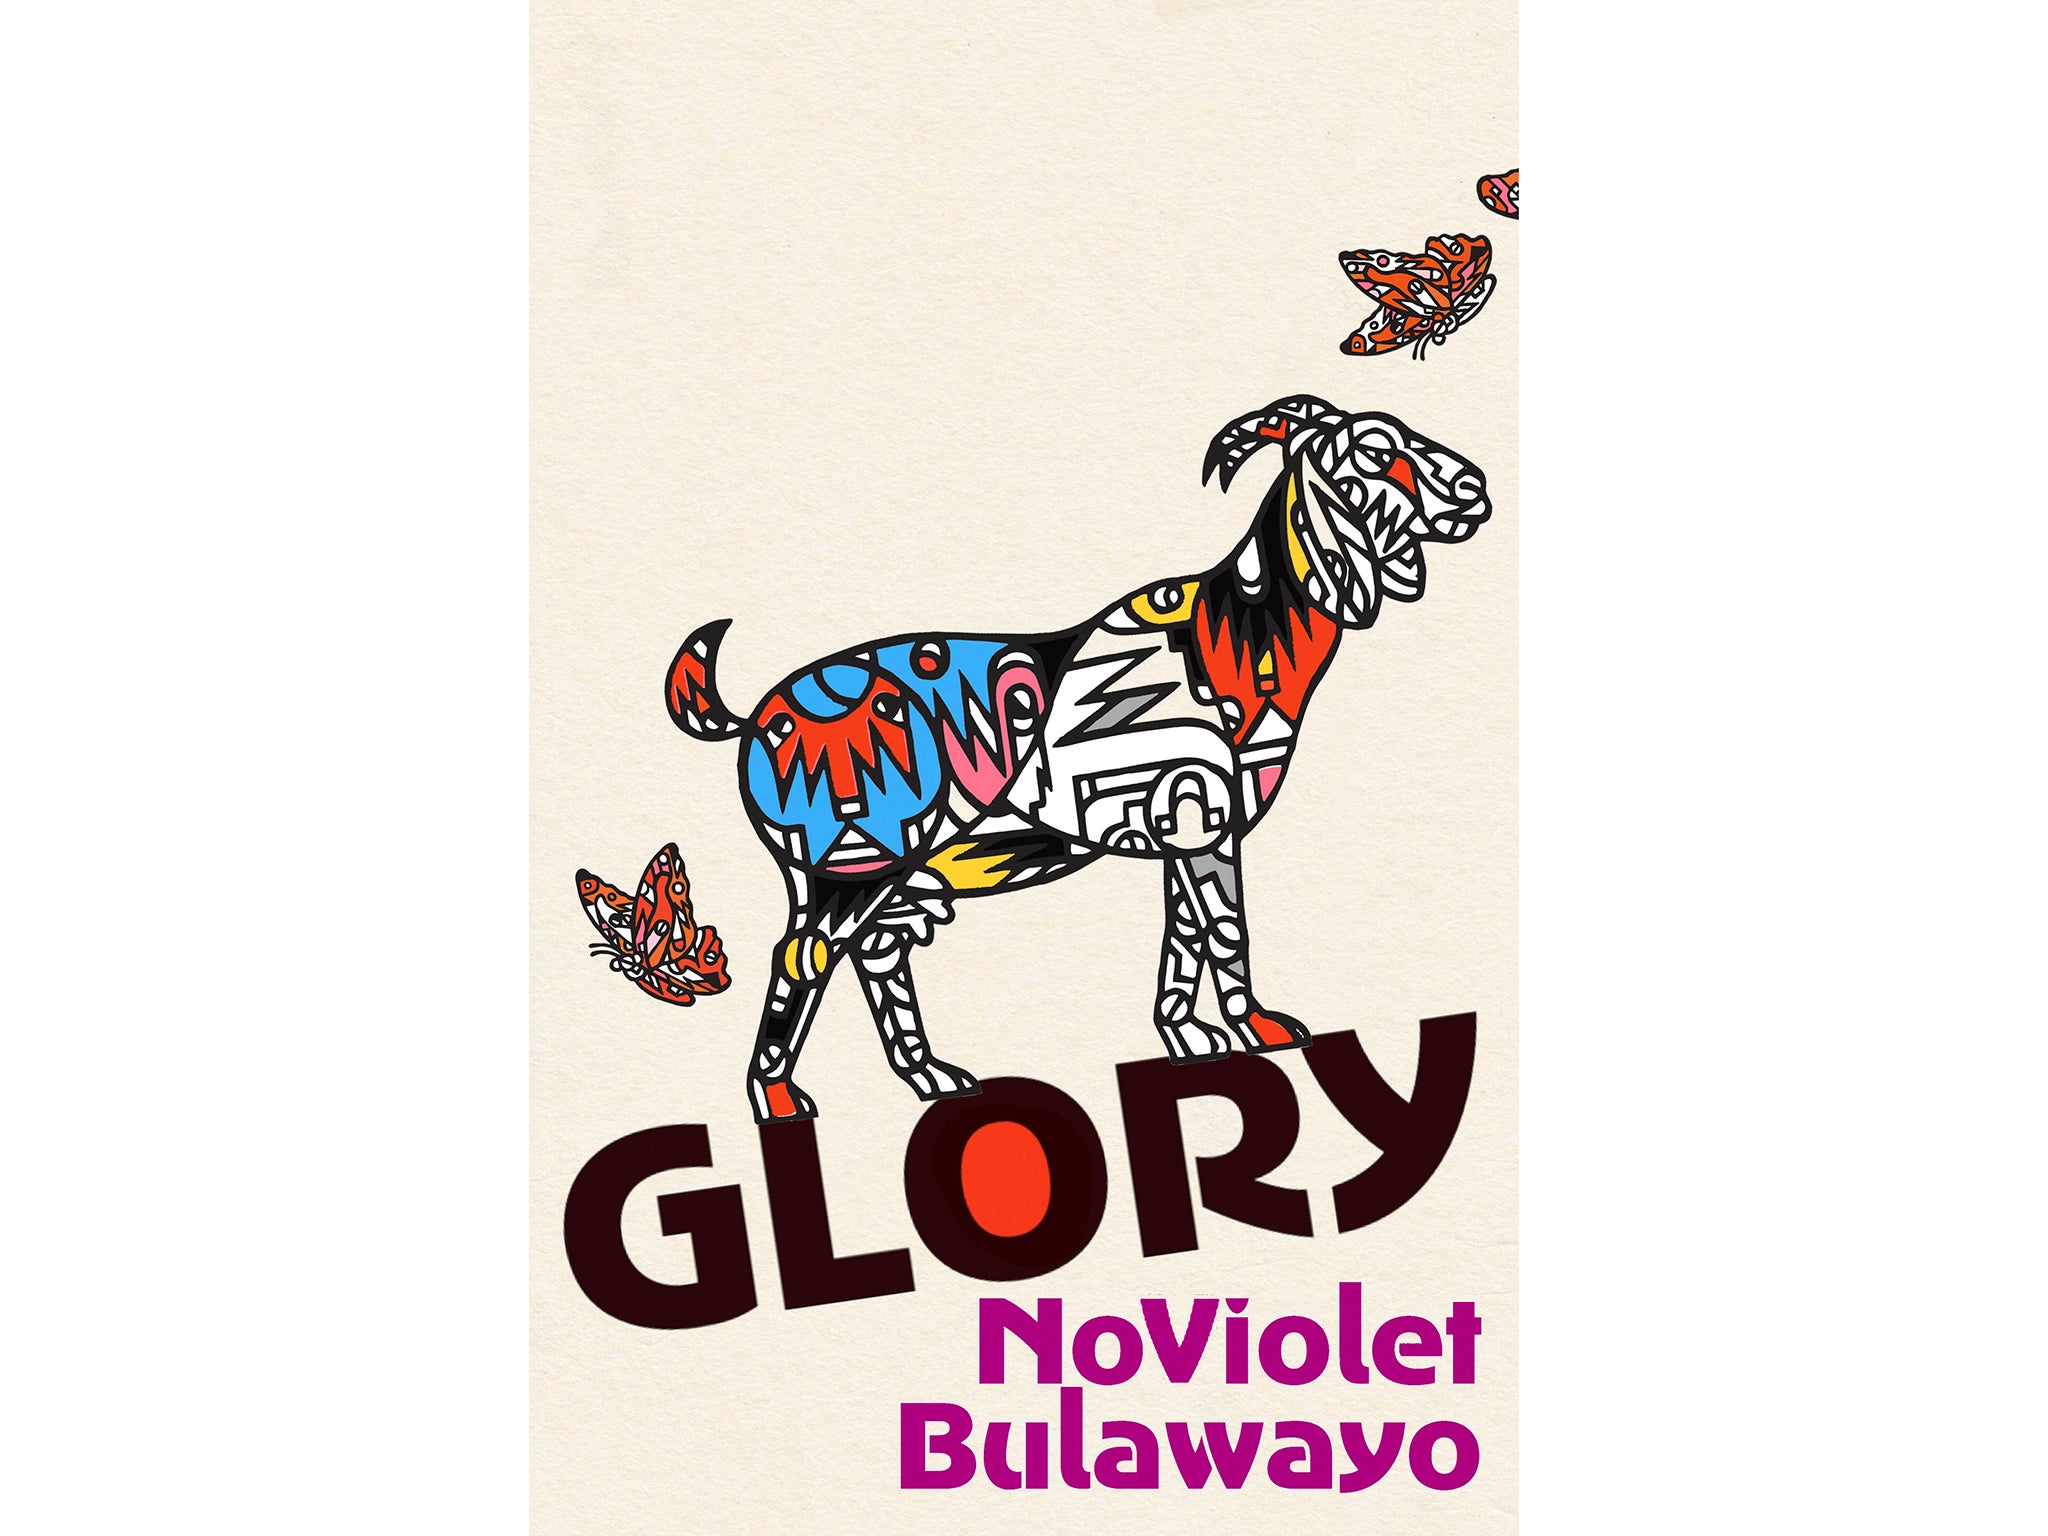 indybest-booker-prize-shortlist-Glory-by-NoViolet-Bulawayo.jpg